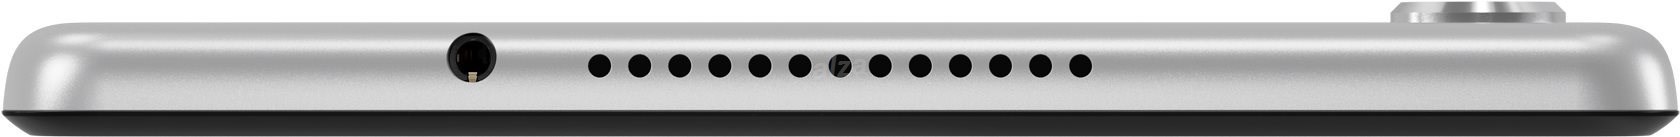 Lenovo TAB M8 Full HD 3GB + 32GB Platinum Grey - Tablet | Alza.cz